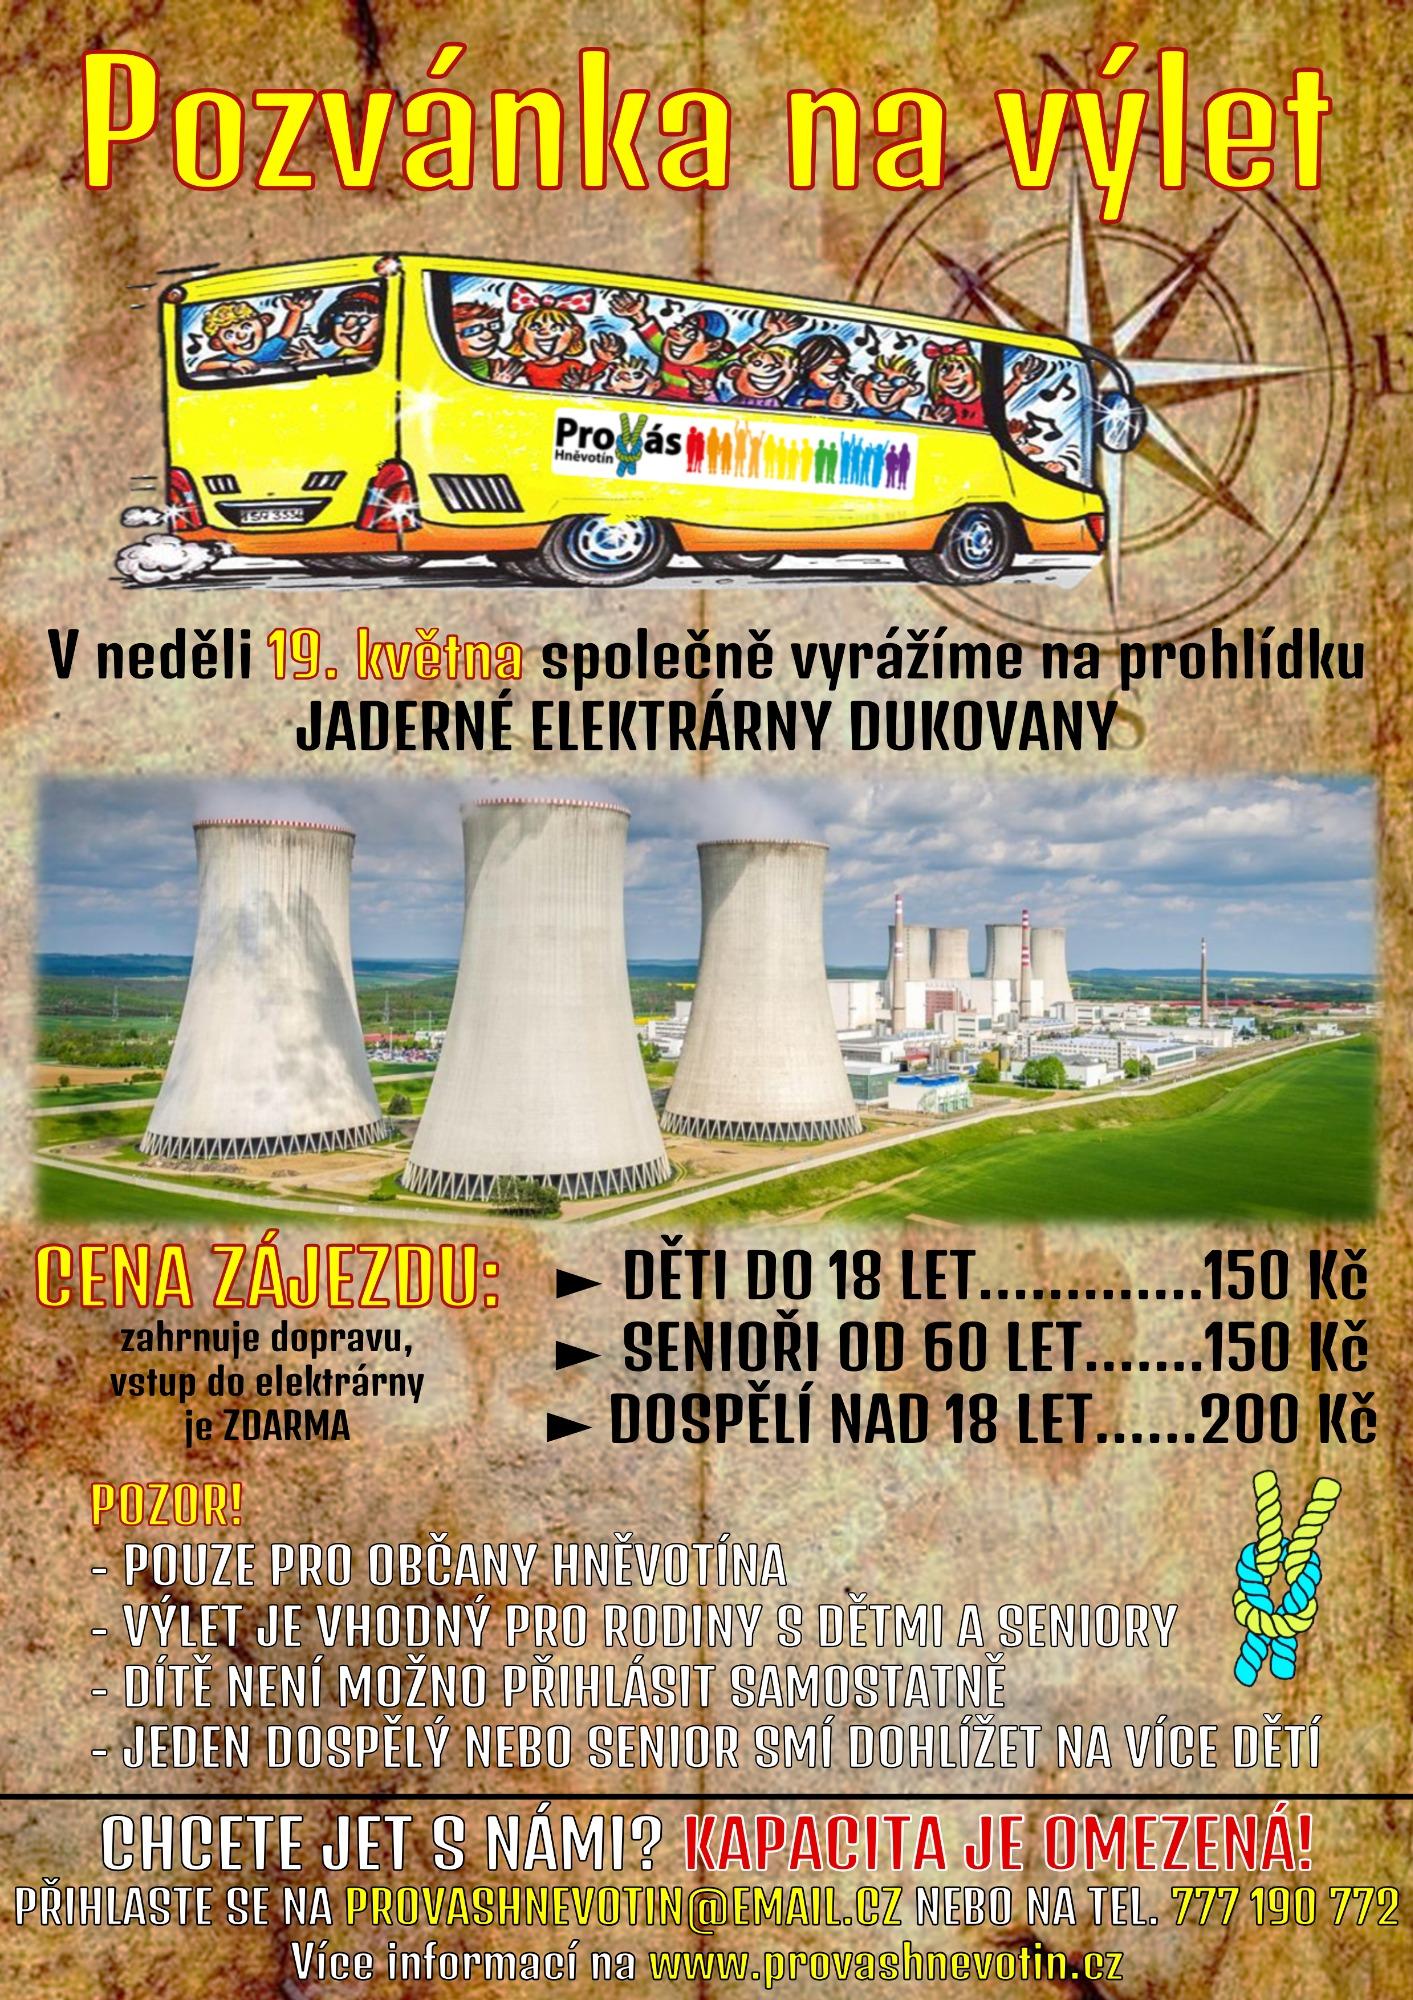 Pozvánka na výlet - Jaderná elektrárna Dukovany